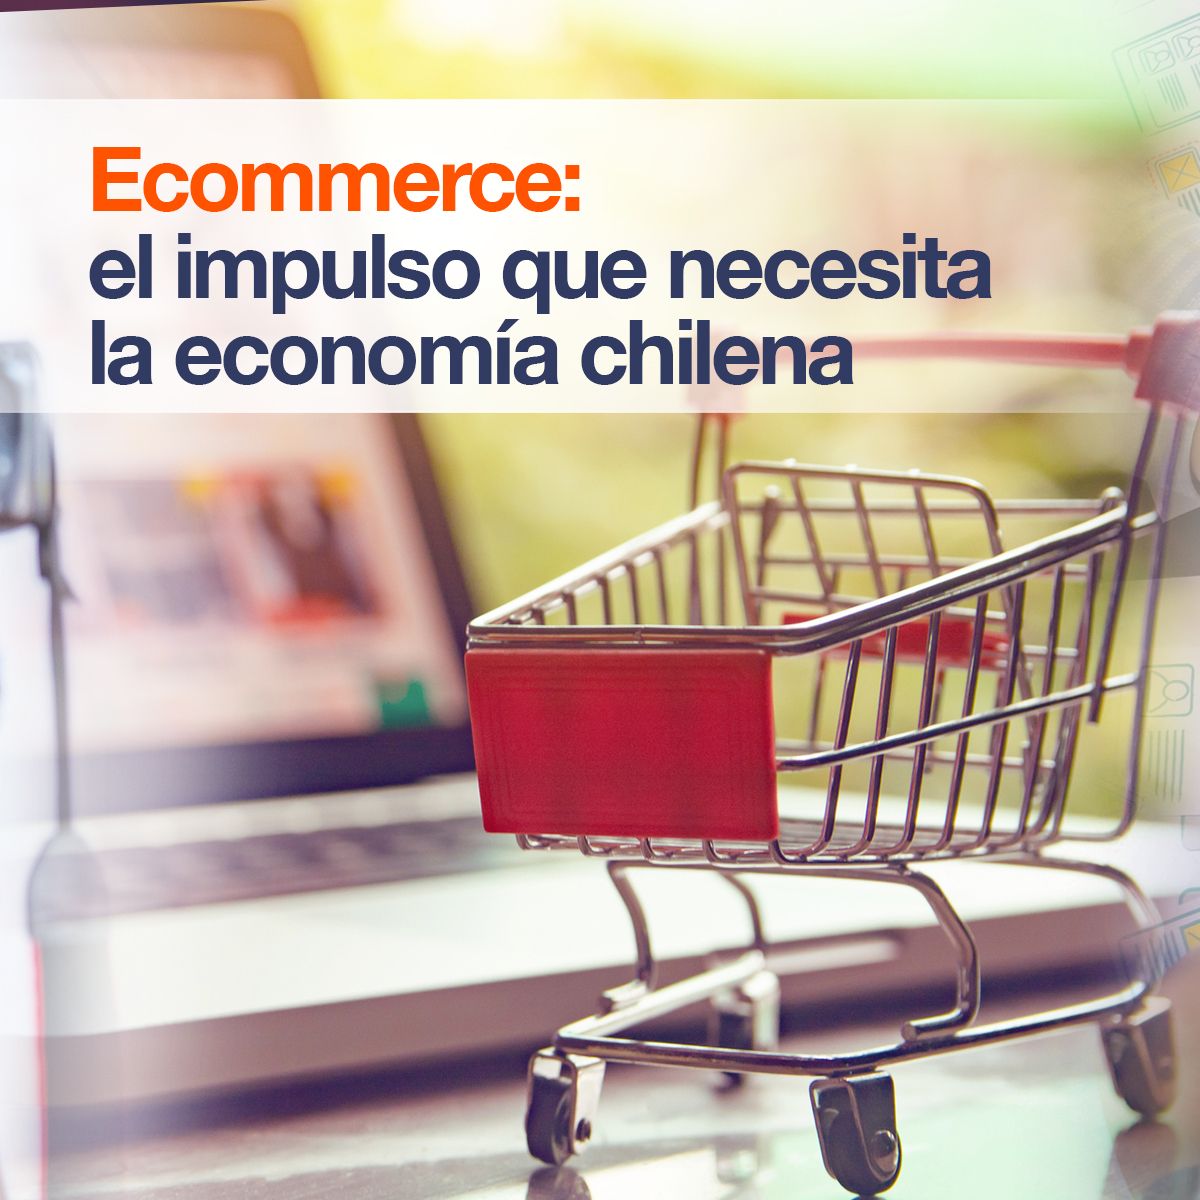 Ecommerce: el impulso que necesita la economía chilena